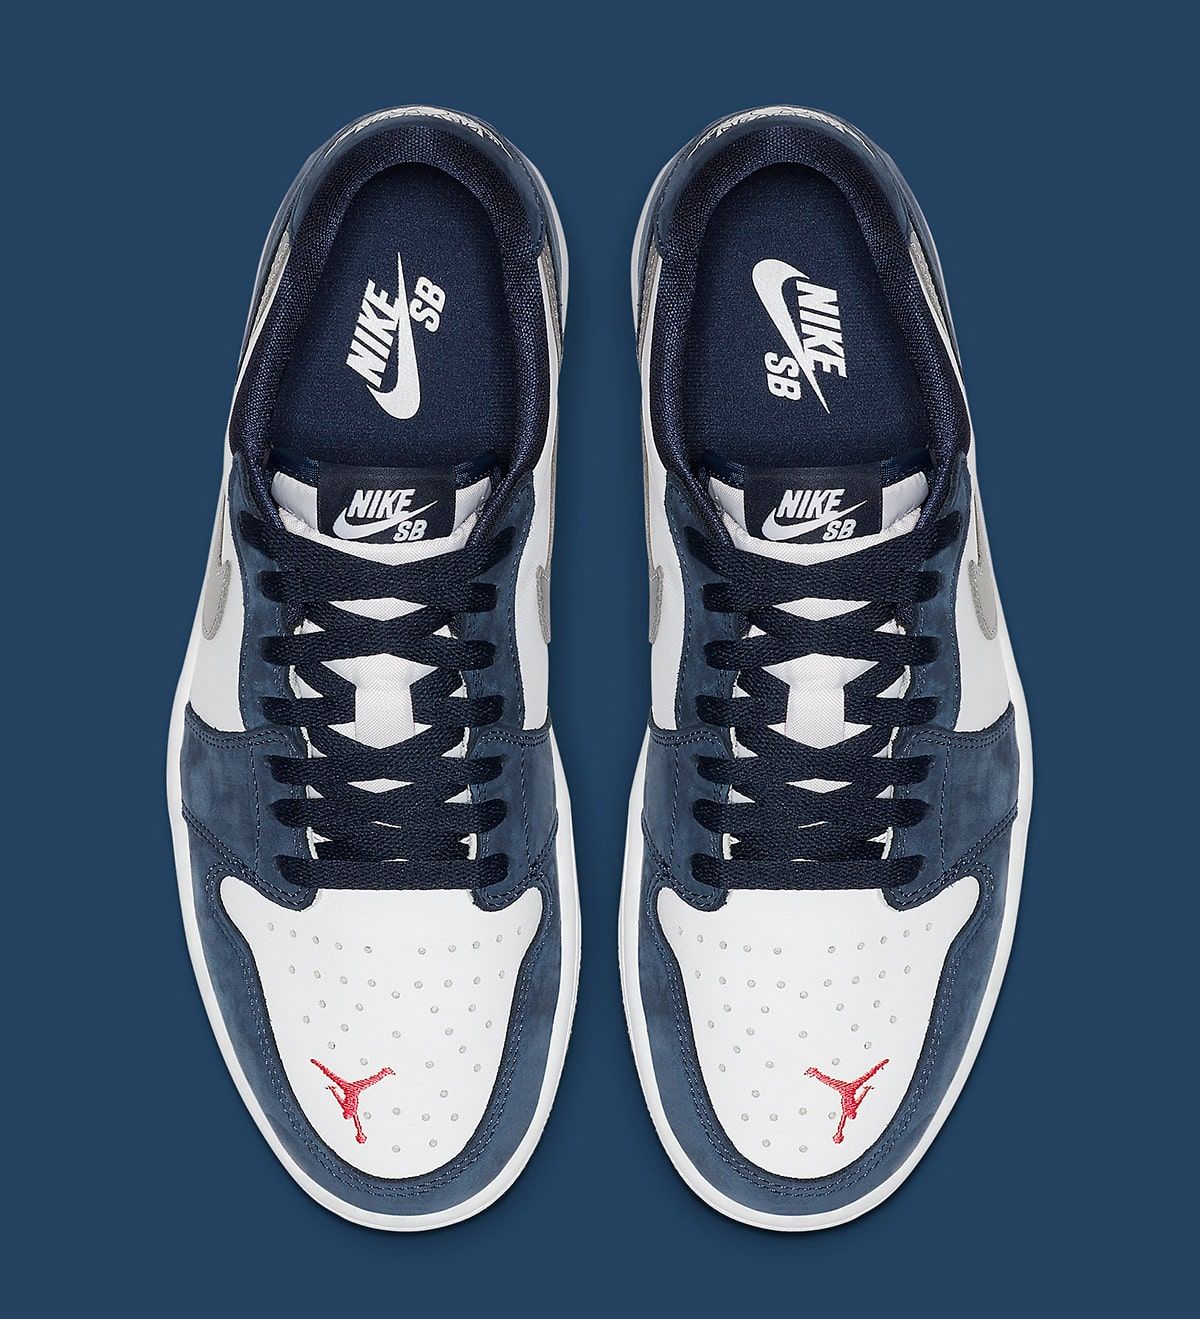 Eric Koston's Nike SB x Air Jordan 1 Low Releases June 17th